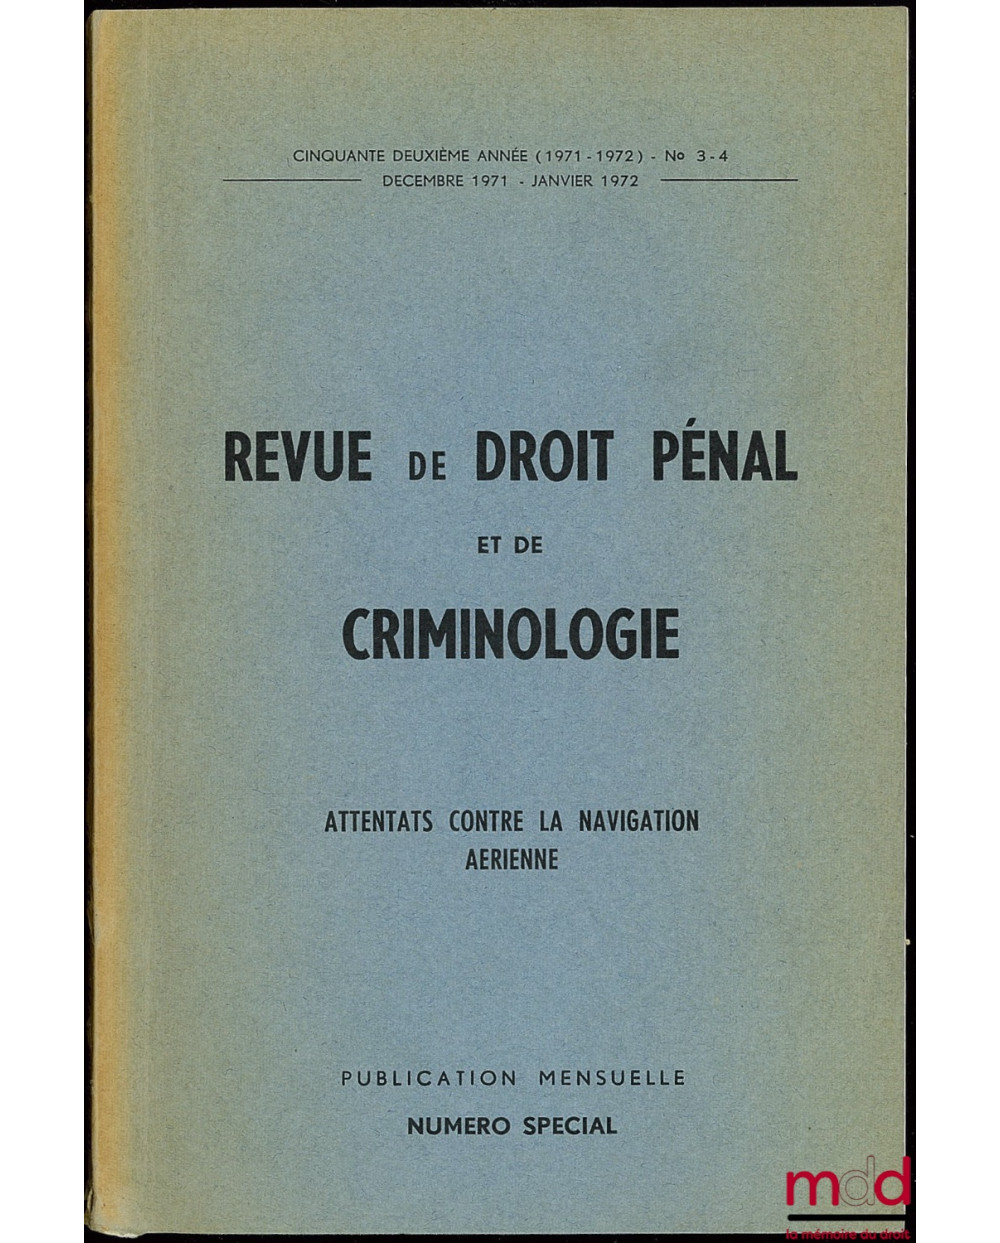 REVUE DE DROIT PÉNAL ET DE CRIMINOLOGIE, ATTENTATS CONTRE LA NAVIGATION AÉRIENNE, Numéro spécial, 52ème année (1971-72) n° 3-4